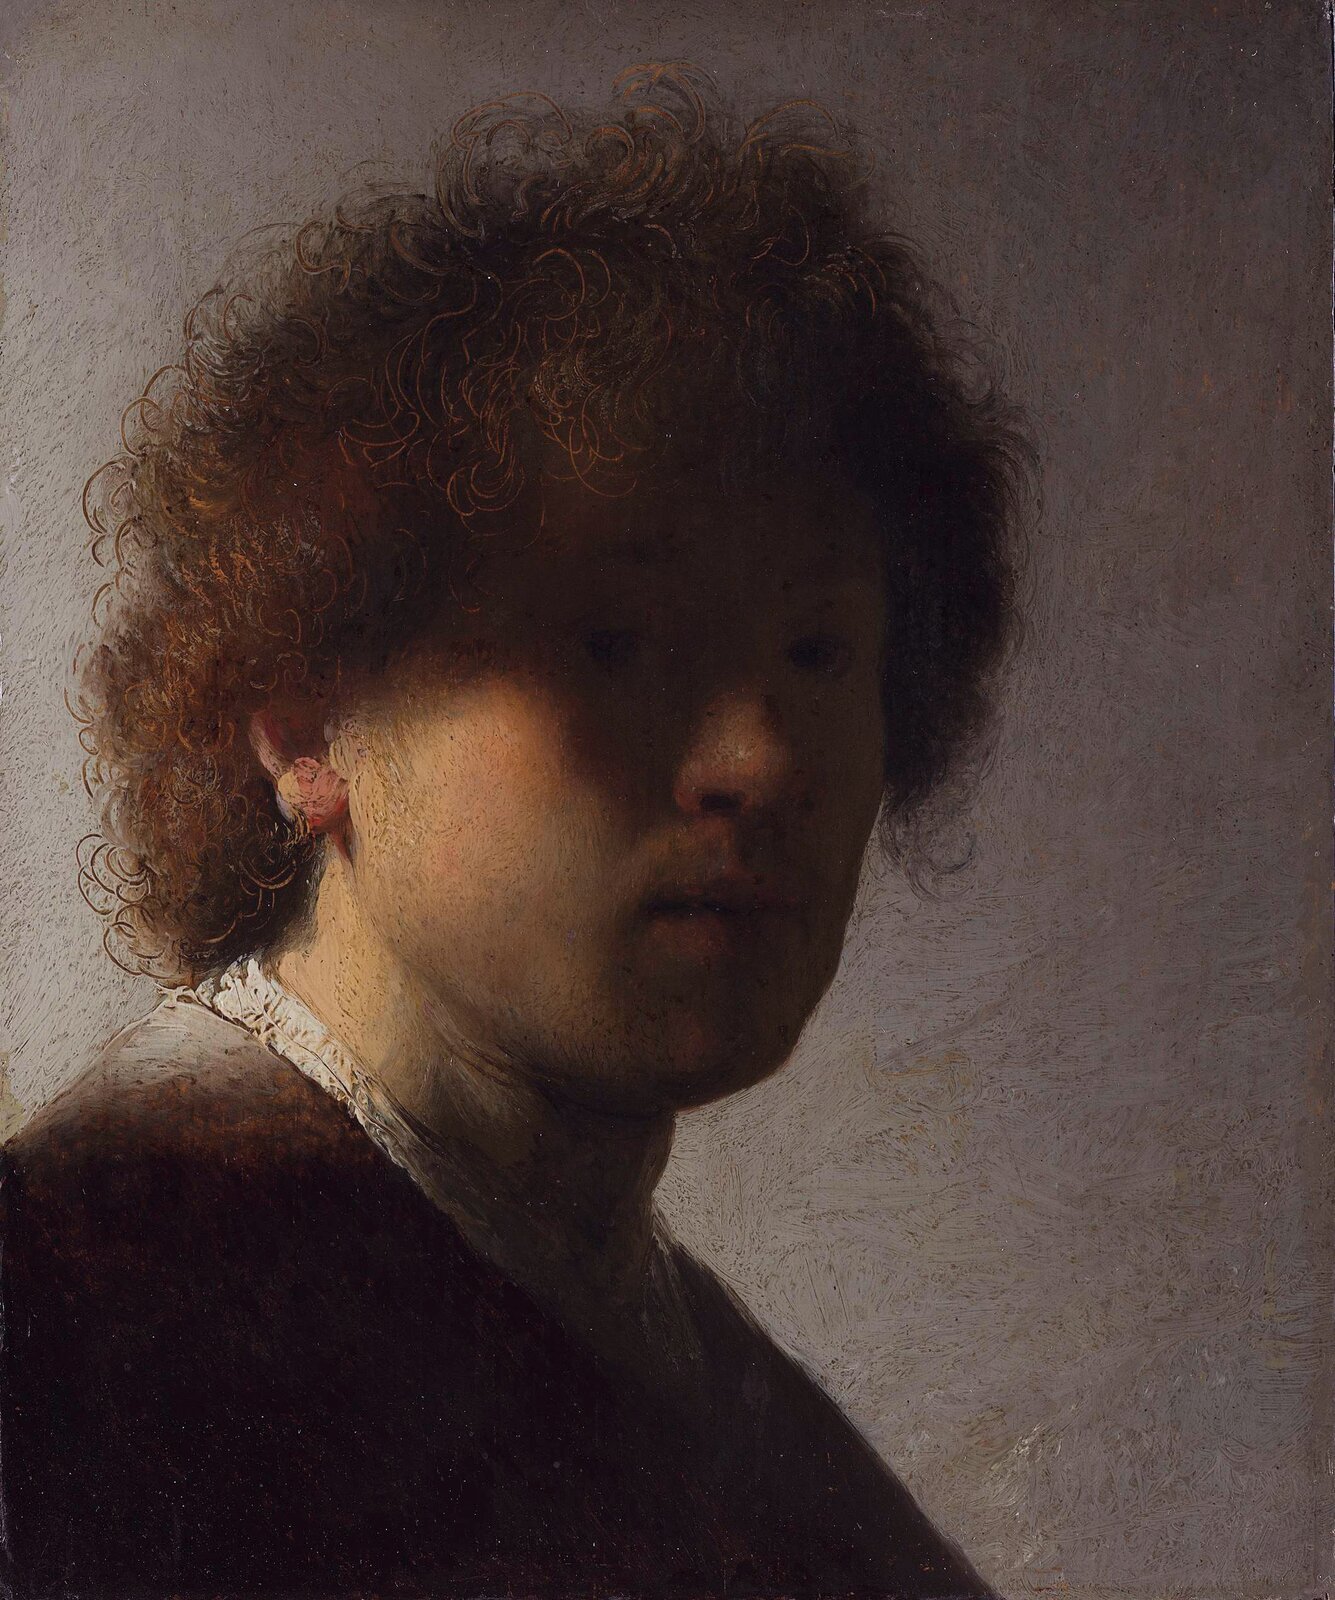 Ilustracja przedstawia "Autoportret" Rembrandta określany jako z zacienioną twarzą. Ukazuje młodego mężczyznę z lokowanymi, brązowymi włosami. Światło pada z lewej strony, rozjaśniając część twarzy artysty. Prawa strona jest ukryta w cieniu. Malarz zadbał o detale – szczegółowo oddał loki na głowie. Jednolite tło, utrzymane w szarościach kontrastuje z postacią i eksponuje twarz.